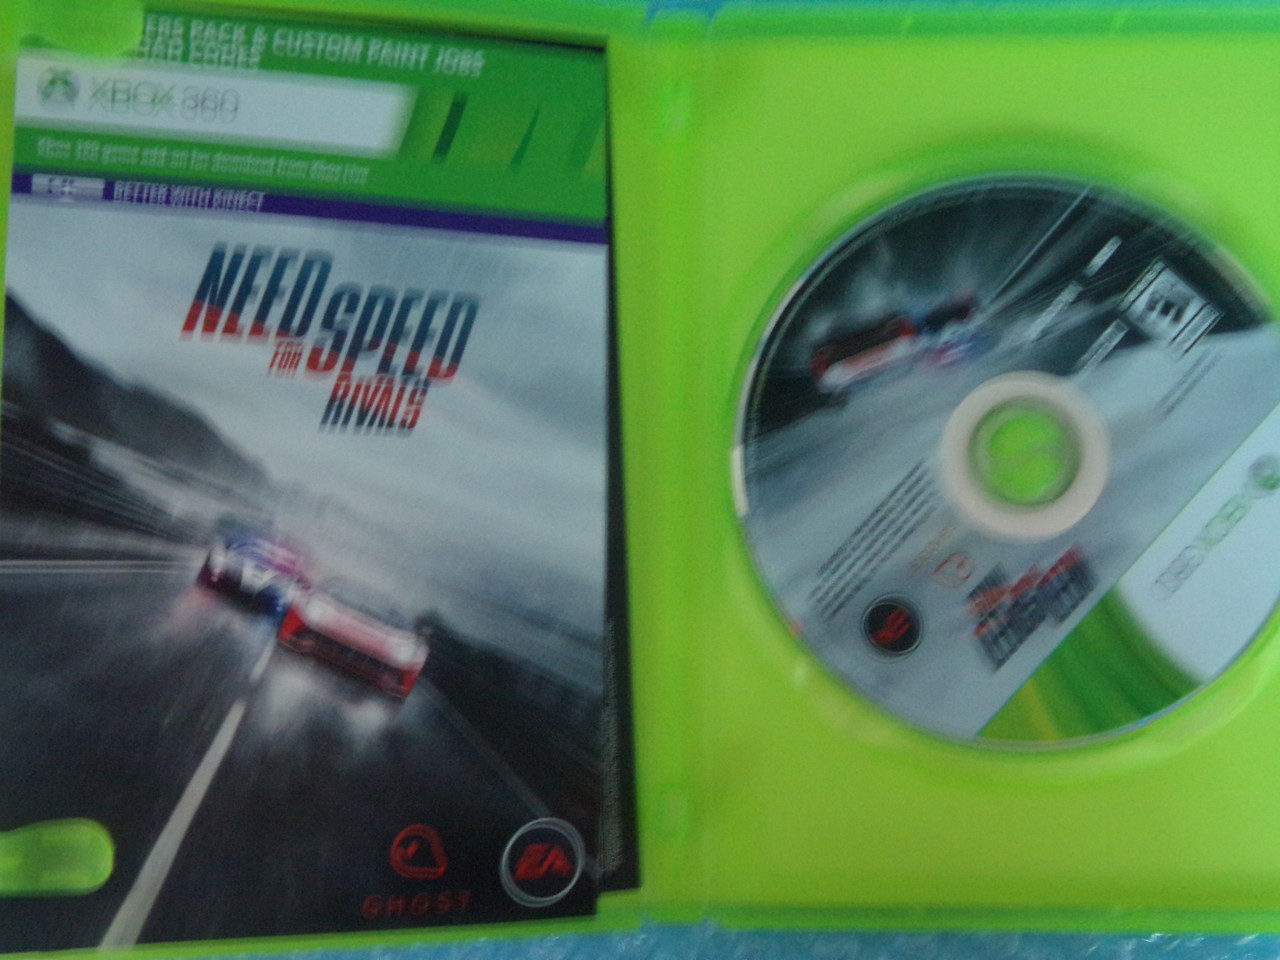 Игра Need For Speed: Rivals (xbox 360, Xbox 360 Games Discs Used